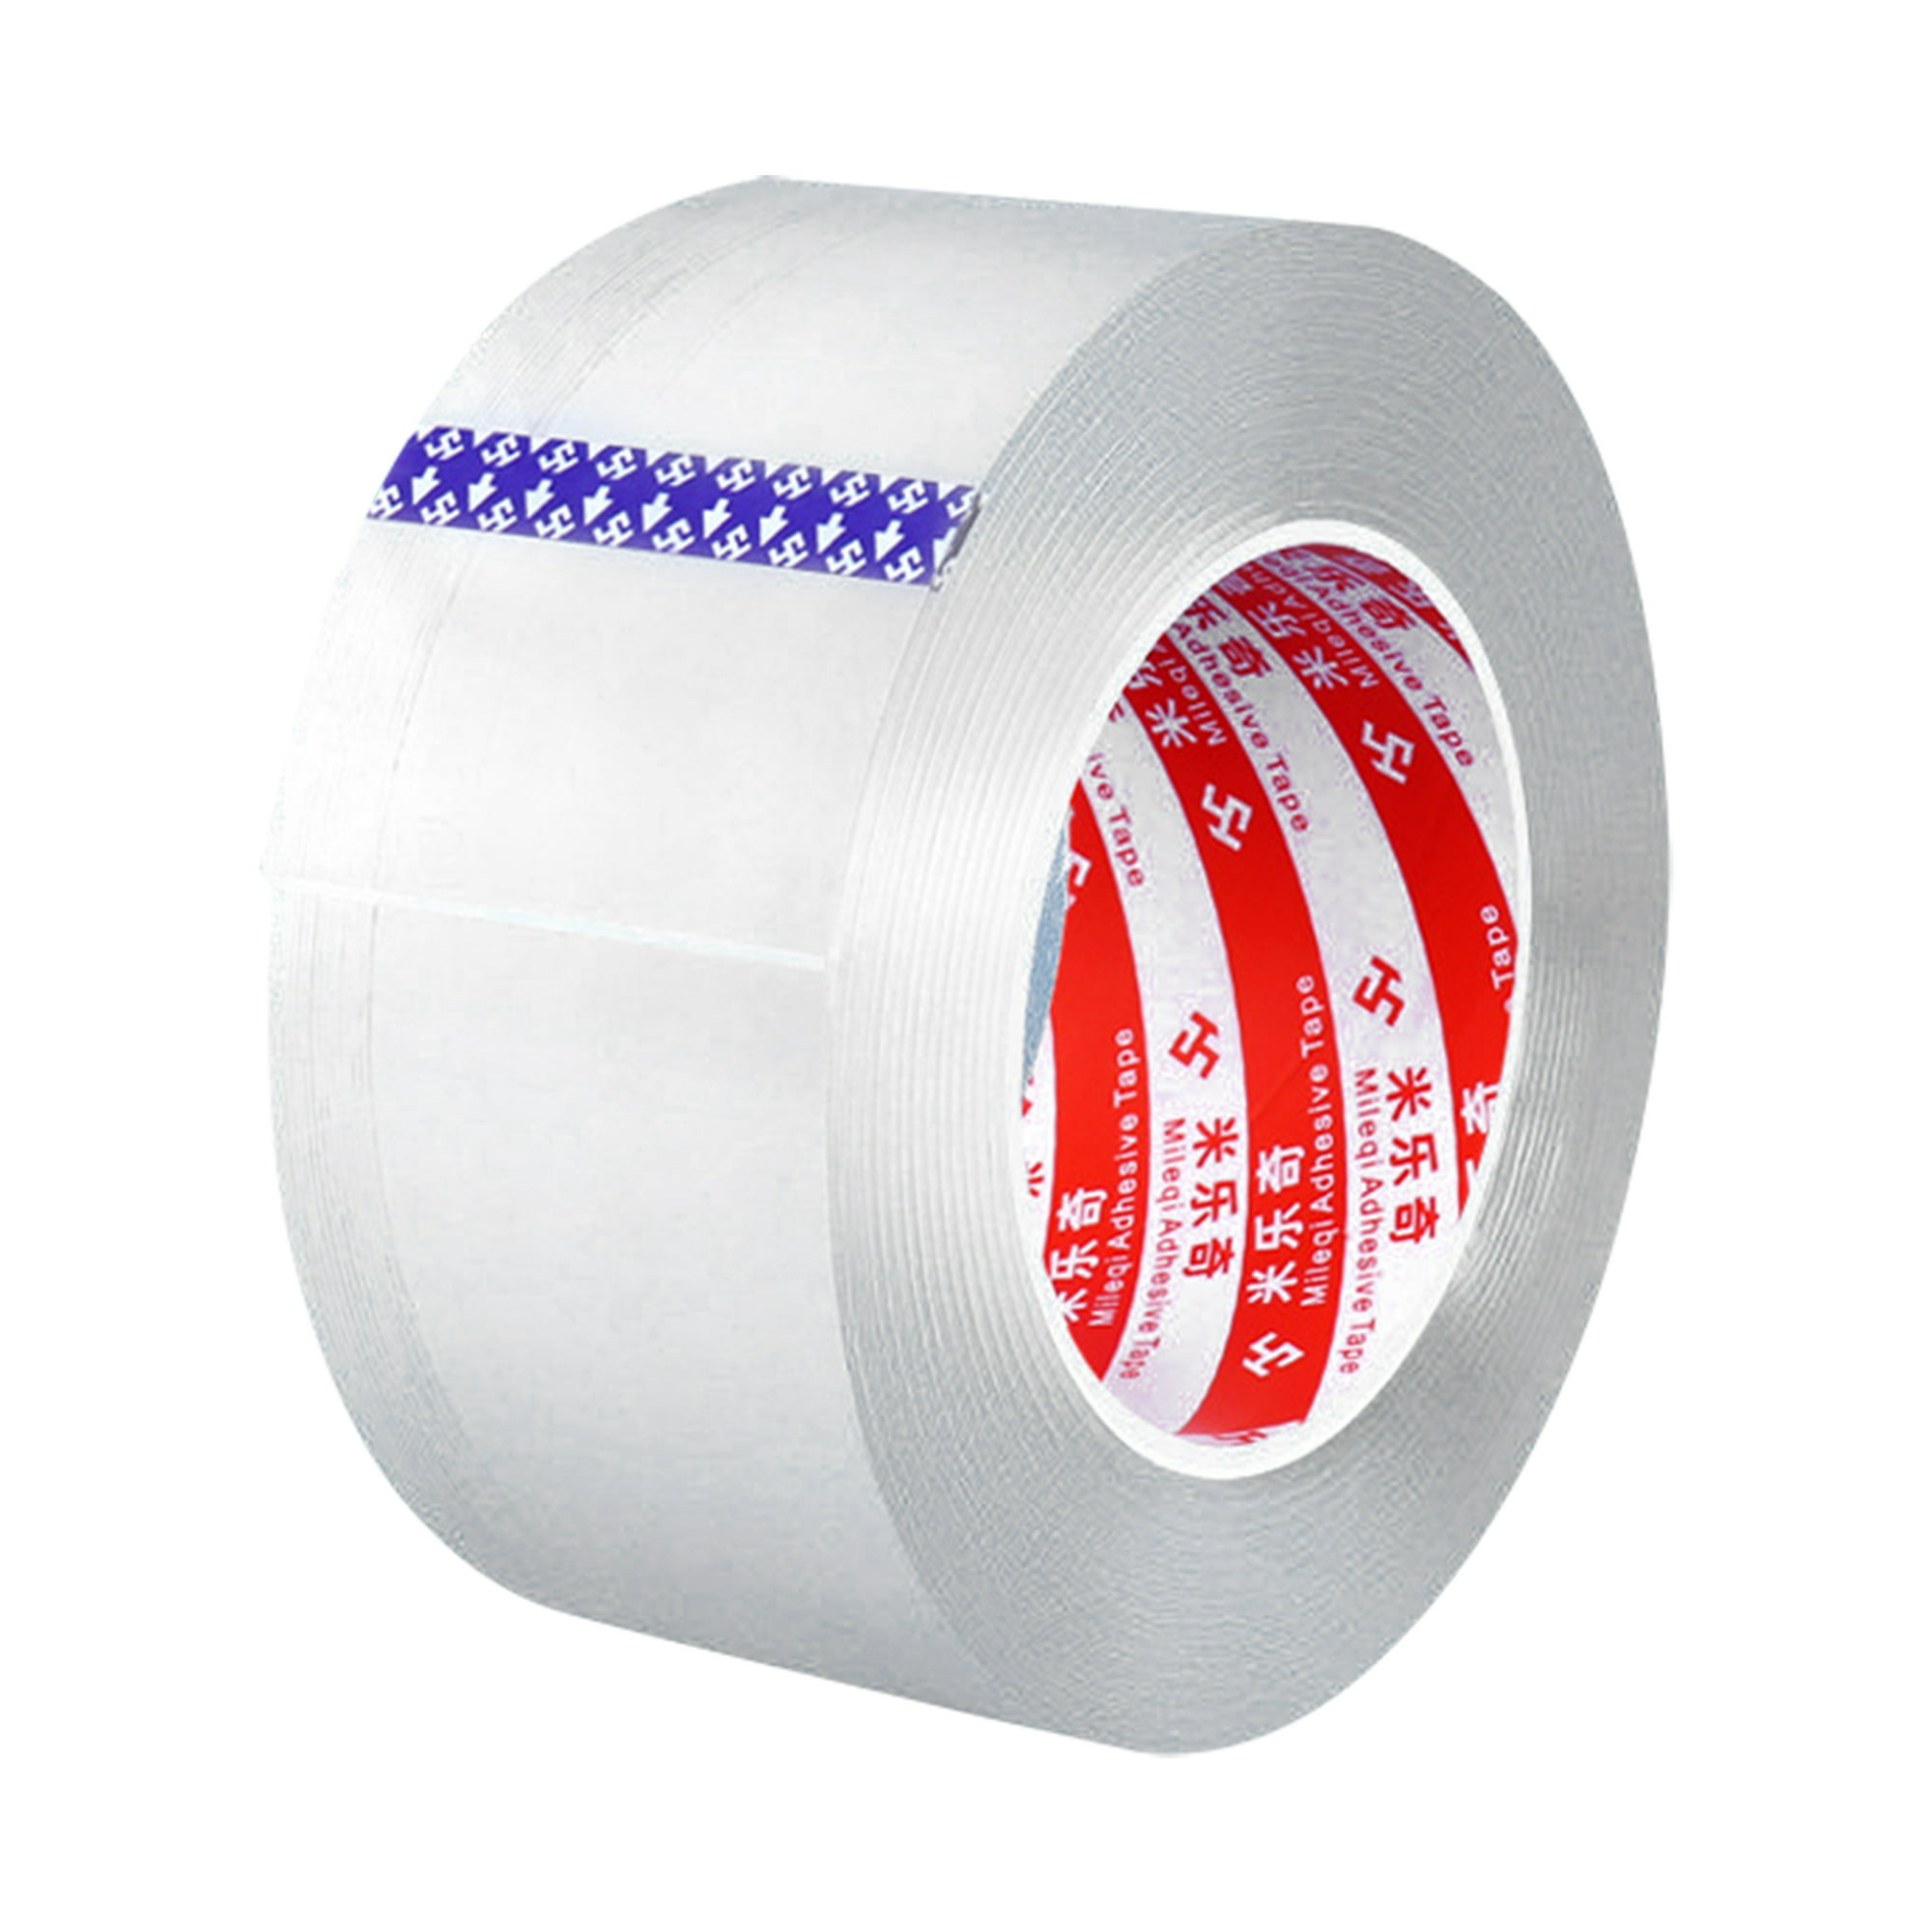 Nano tape cinta de montaje doble cara 2mm